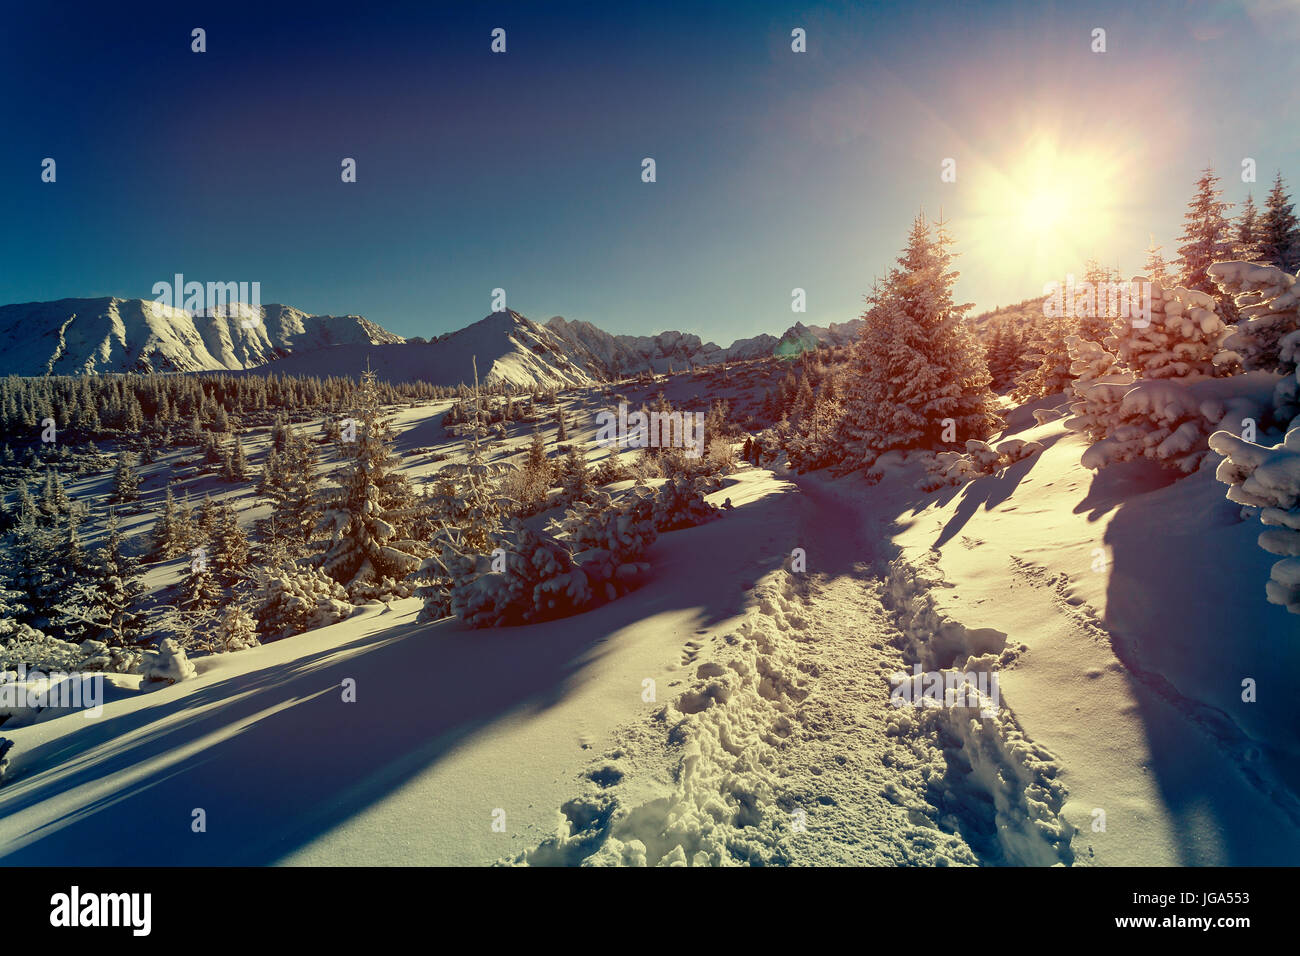 Paysage d'hiver avec coucher de soleil Banque D'Images